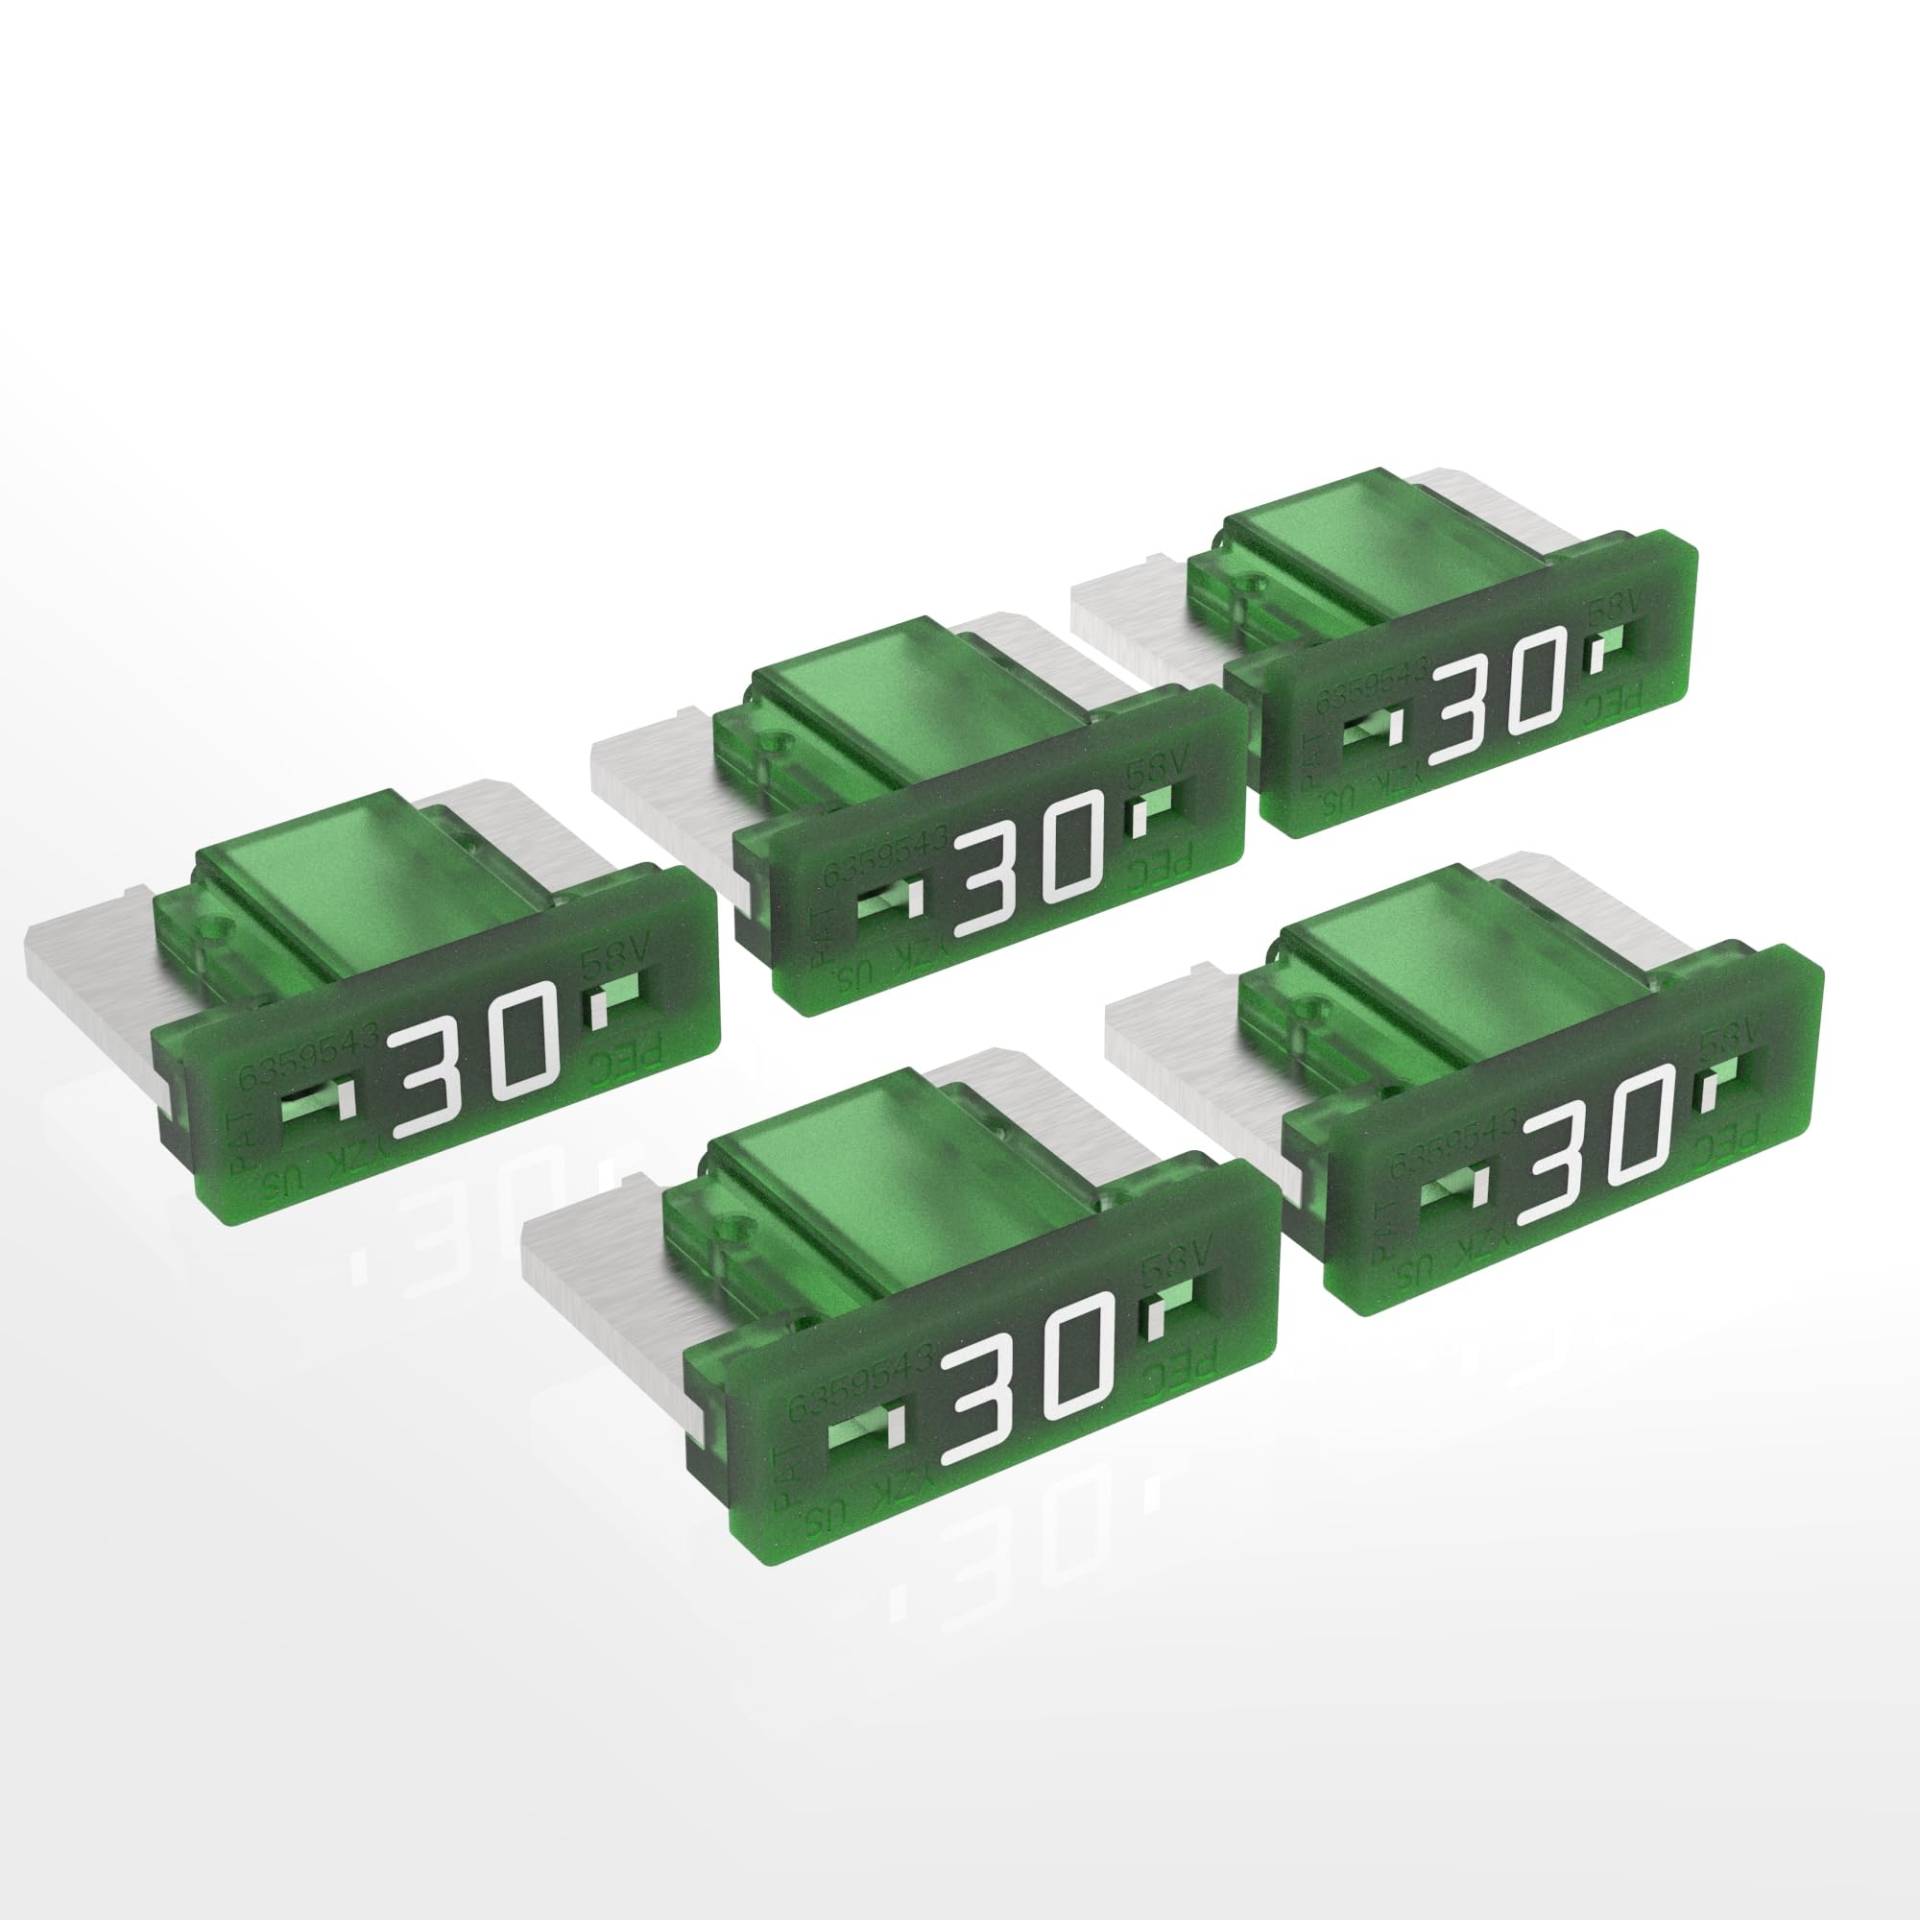 AUPROTEC Mini LP Kfz Sicherungen Flachstecksicherungen 2A - 30A Auswahl: 30A Ampere grün, 5 Stück von AUPROTEC